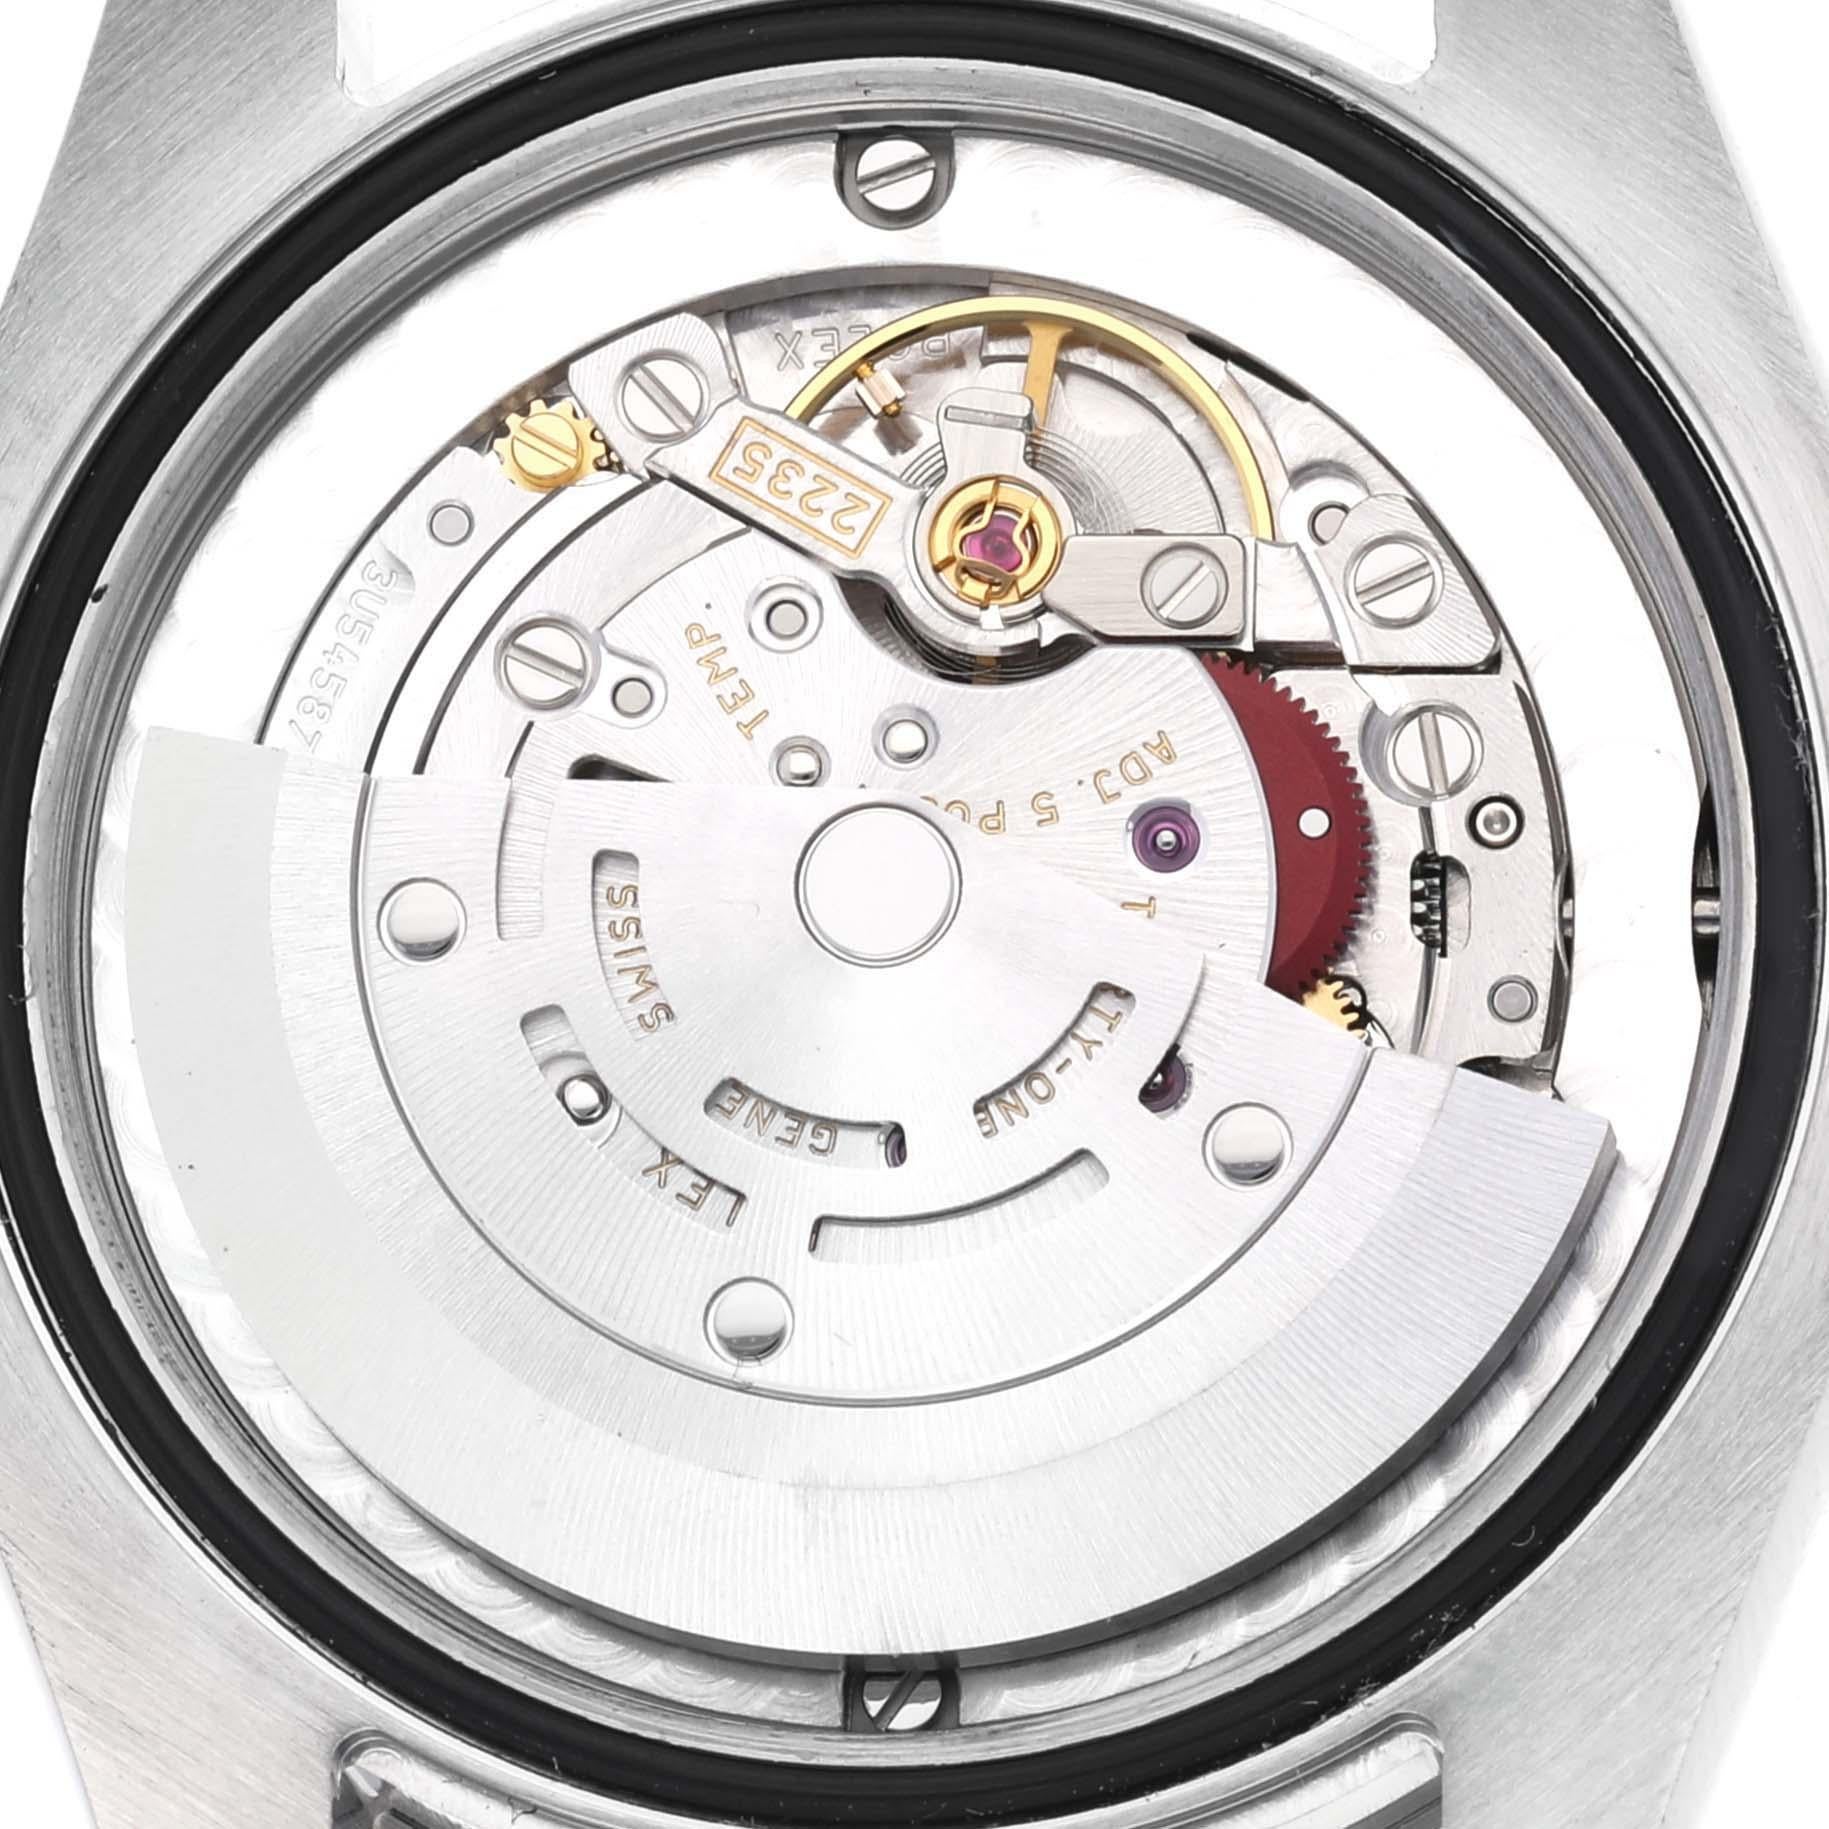 Rolex Datejust Midsize 31 Steel White Gold Ladies Watch 178274 Box Card. Mouvement automatique à remontage automatique, officiellement certifié chronomètre. Boîtier oyster en acier inoxydable de 31.0 mm de diamètre. Logo Rolex sur la couronne.